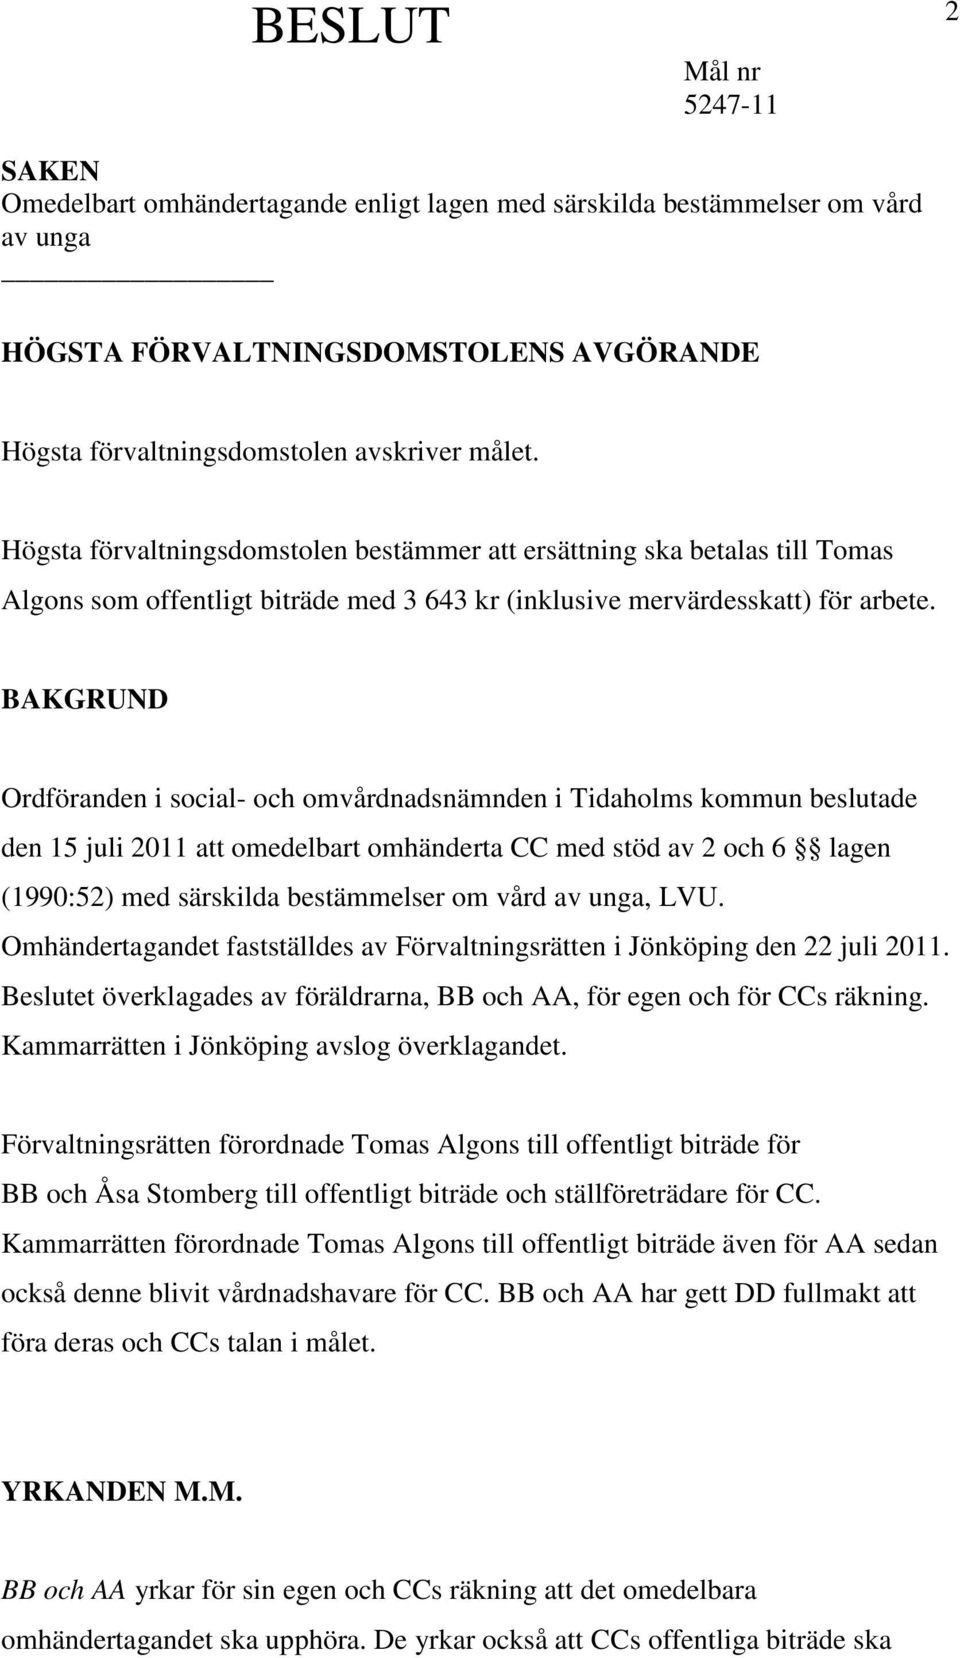 BAKGRUND Ordföranden i social- och omvårdnadsnämnden i Tidaholms kommun beslutade den 15 juli 2011 att omedelbart omhänderta CC med stöd av 2 och 6 lagen (1990:52) med särskilda bestämmelser om vård